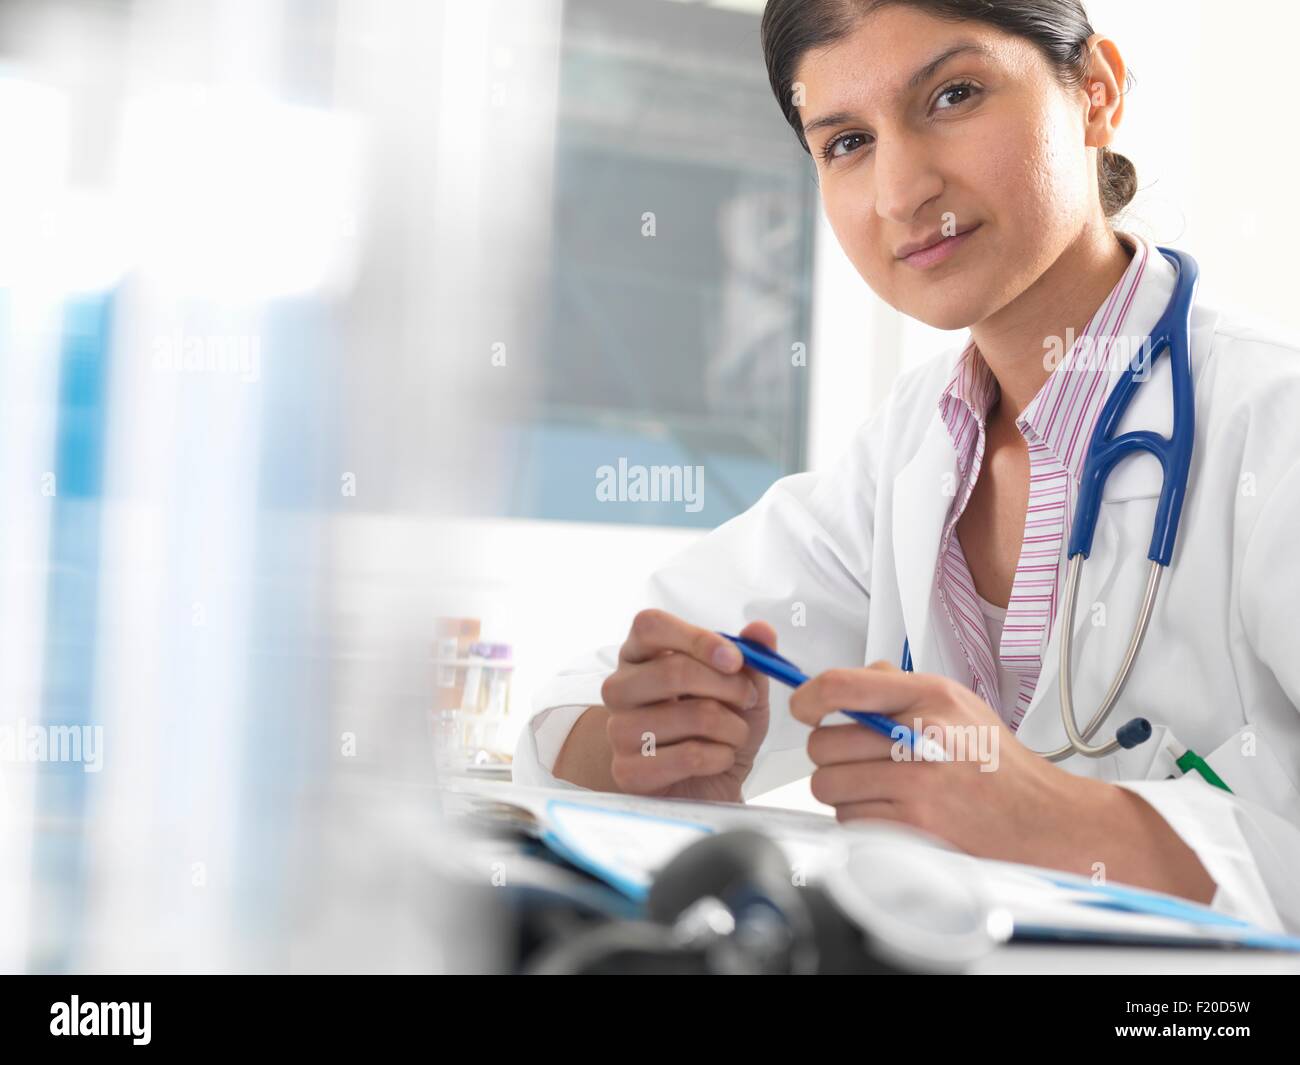 Retrato de mujer doctor en la mesa de trabajo sobre registros médicos Foto de stock